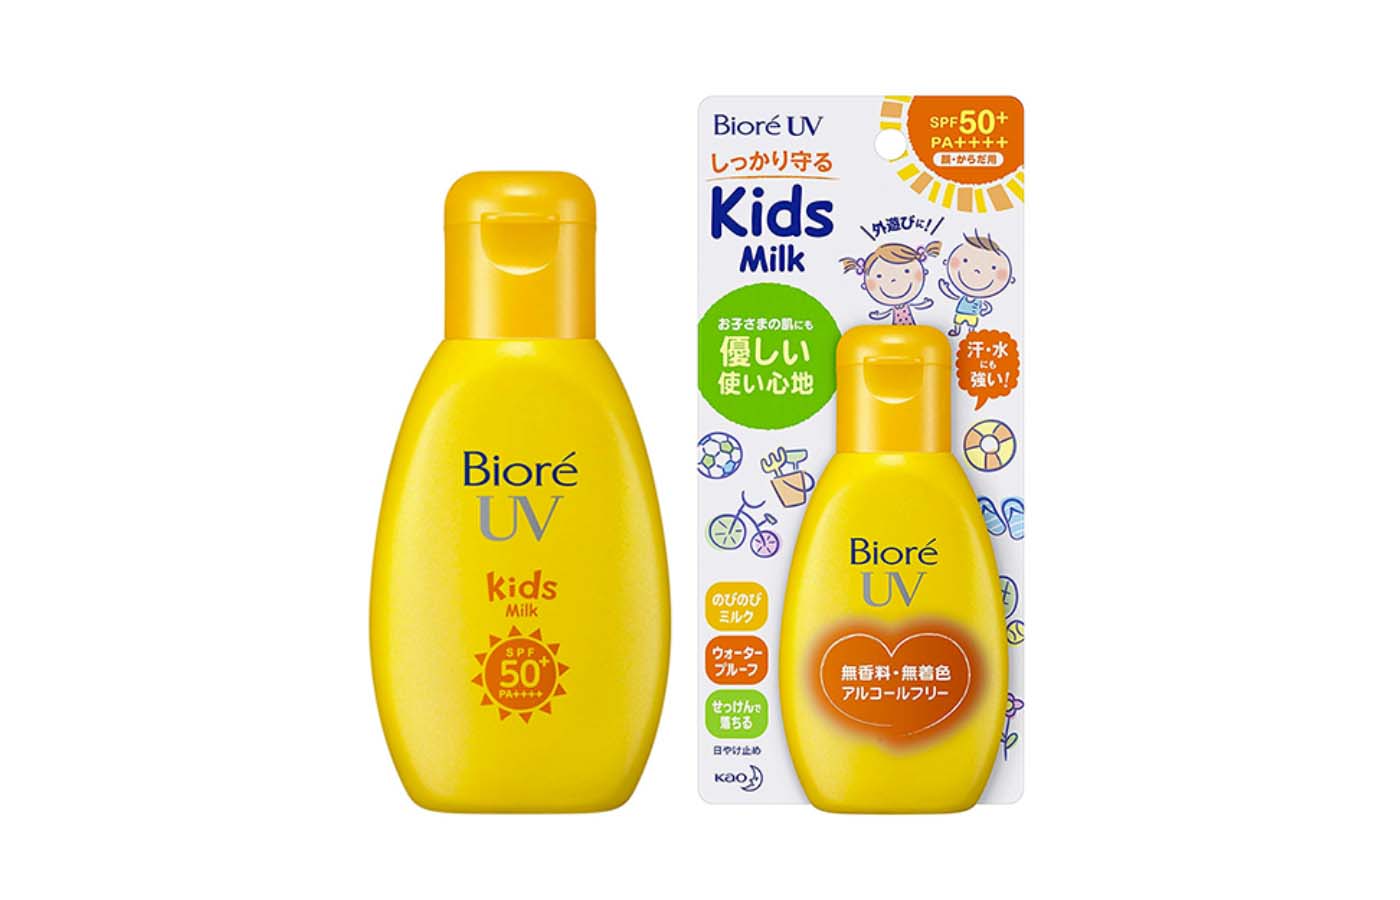 Sữa chống nắng Biore UV Kids Milk dịu nhẹ cho trẻ